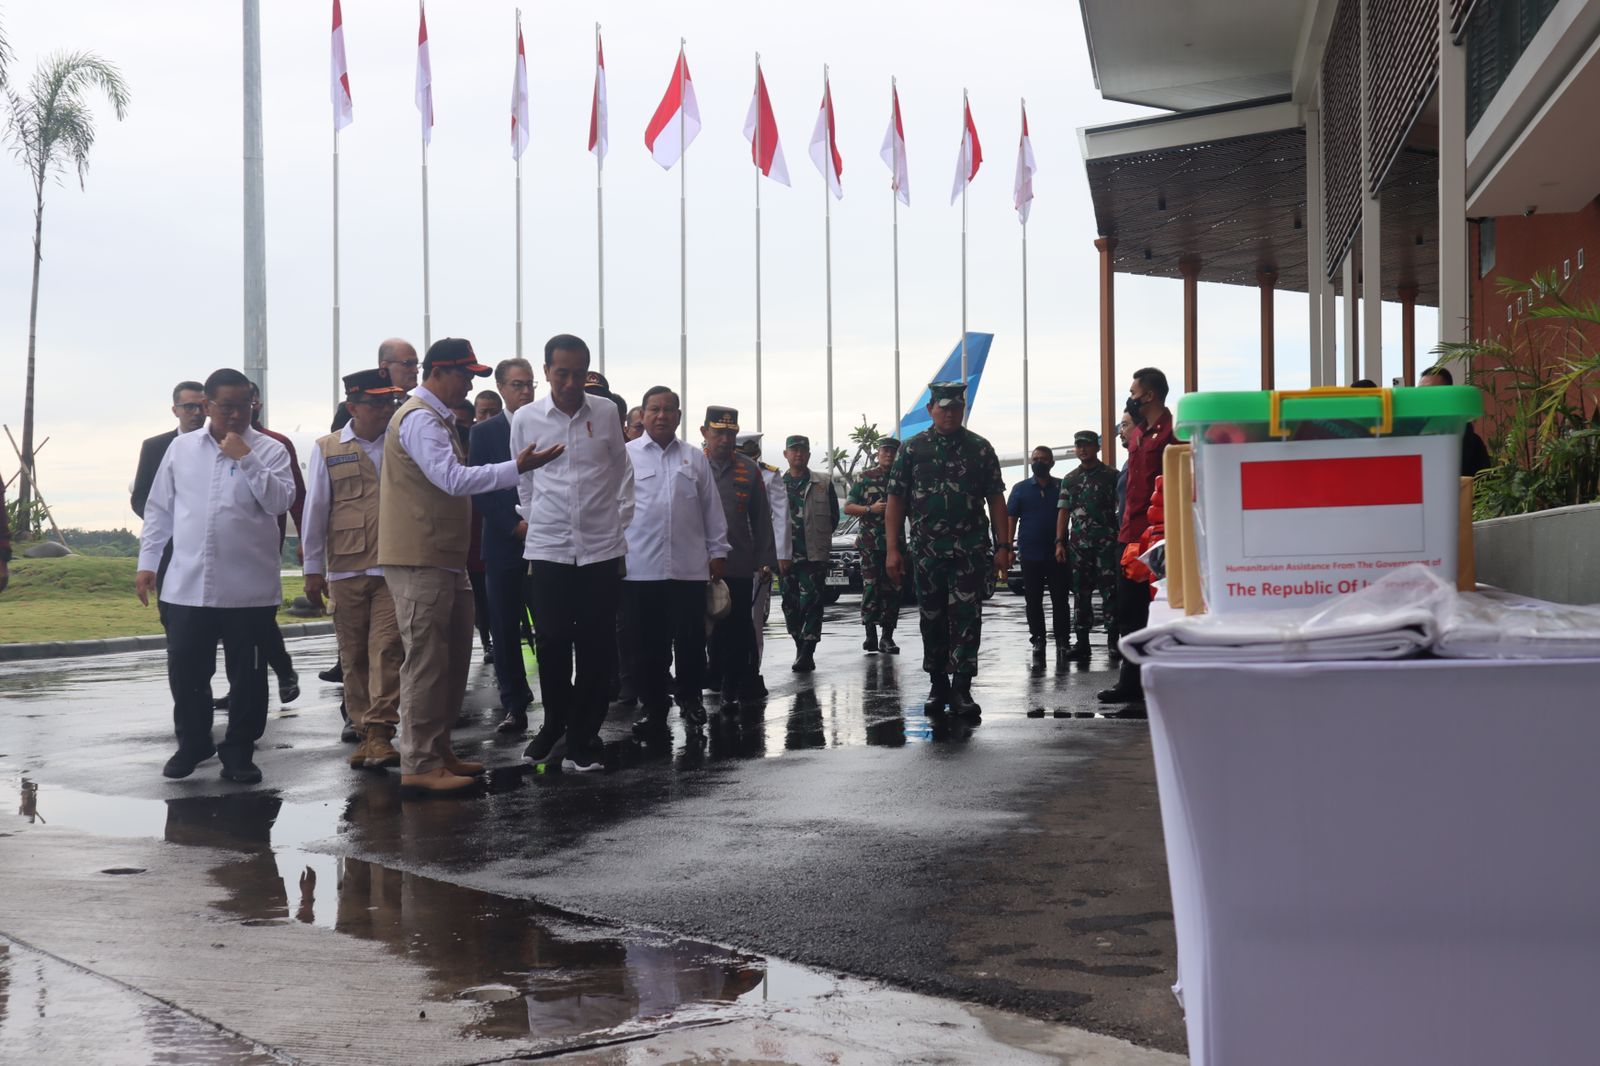 Kepala BNPB Letjen TNI Suharyanto (kemeja putih dan rompi cokelat) menjelaskan kepada Presiden RI Joko Widodo beserta jajaran terkait logistik yang akan diberangkatkan Menuju Turkiye dan Suriah di Lanud Halim Perdanakusumah, Jakarta pada Selasa (21/2).